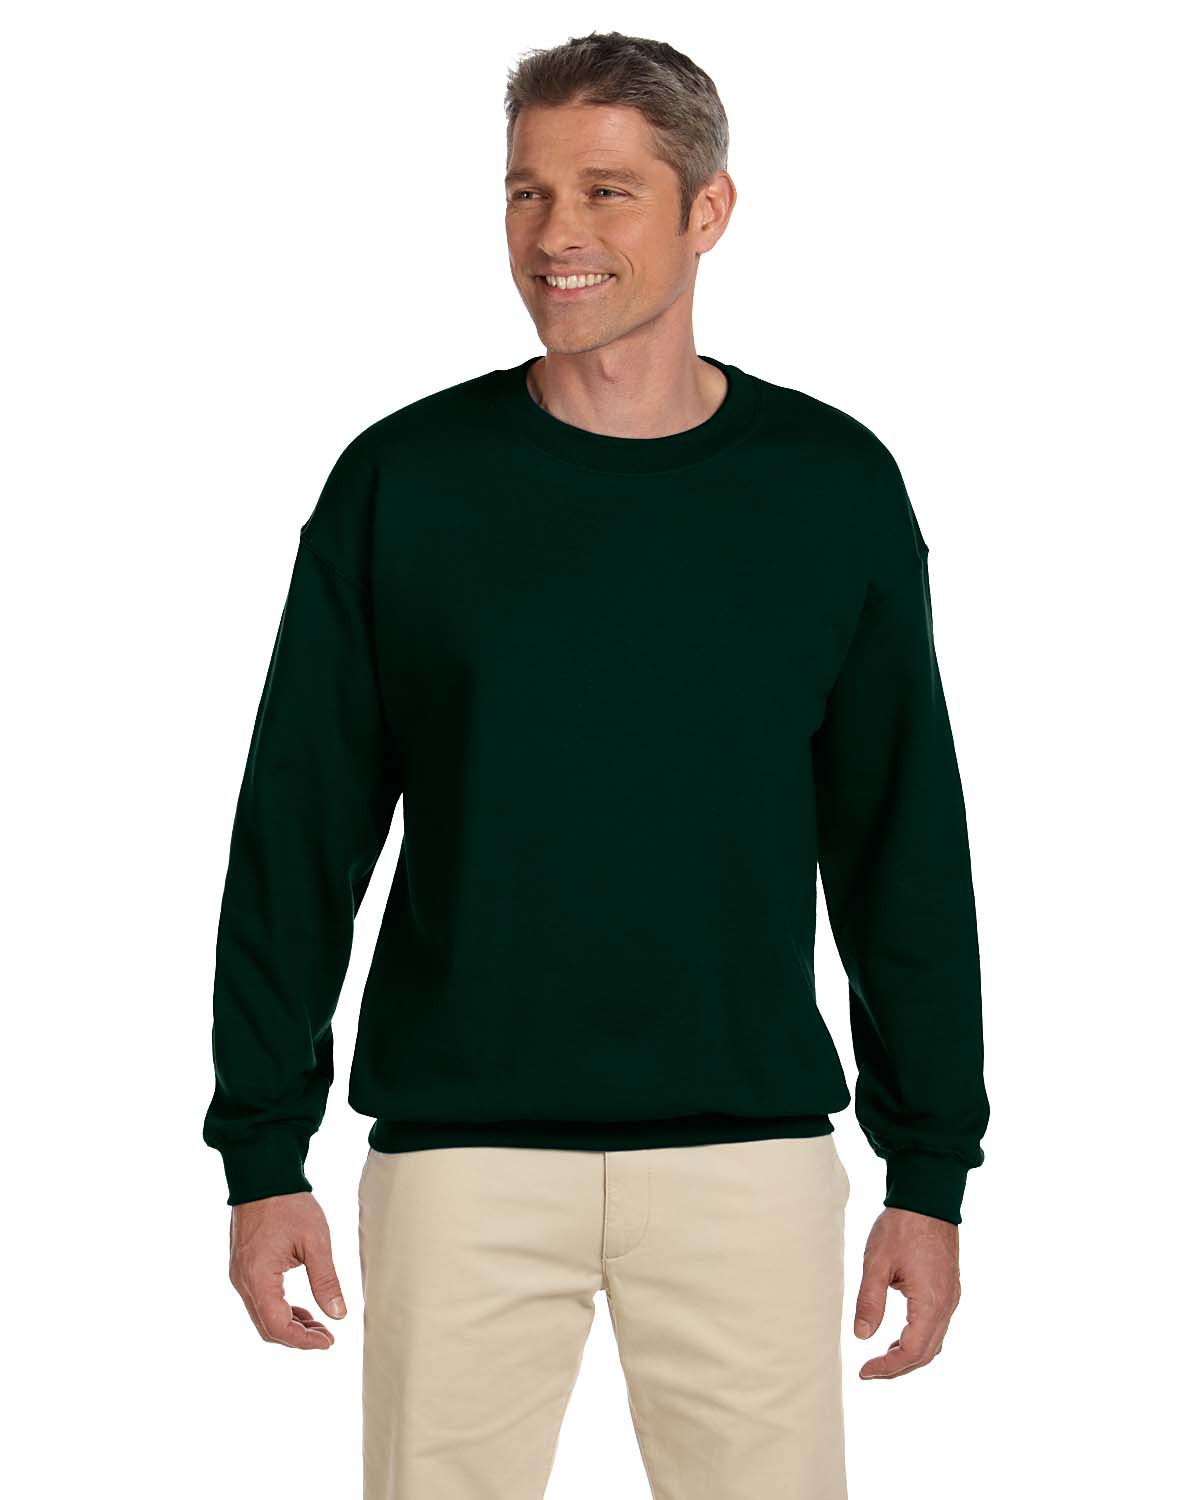 Hanes F260, Ultimate Cotton ® - Crewneck Sweatshirt